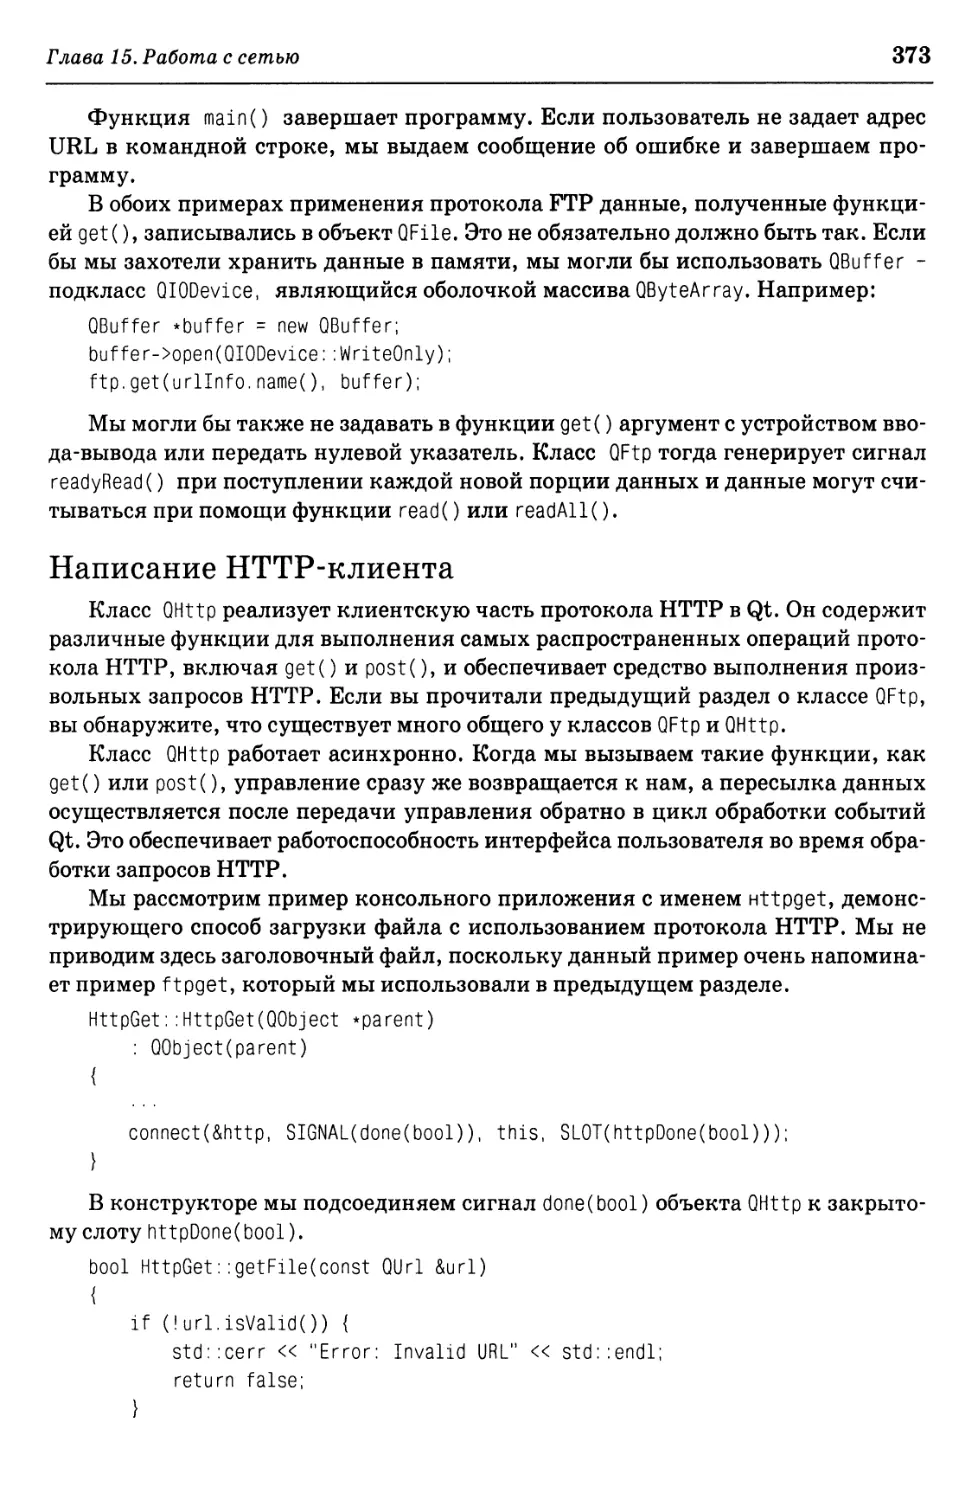 Написание HTTP-клиента